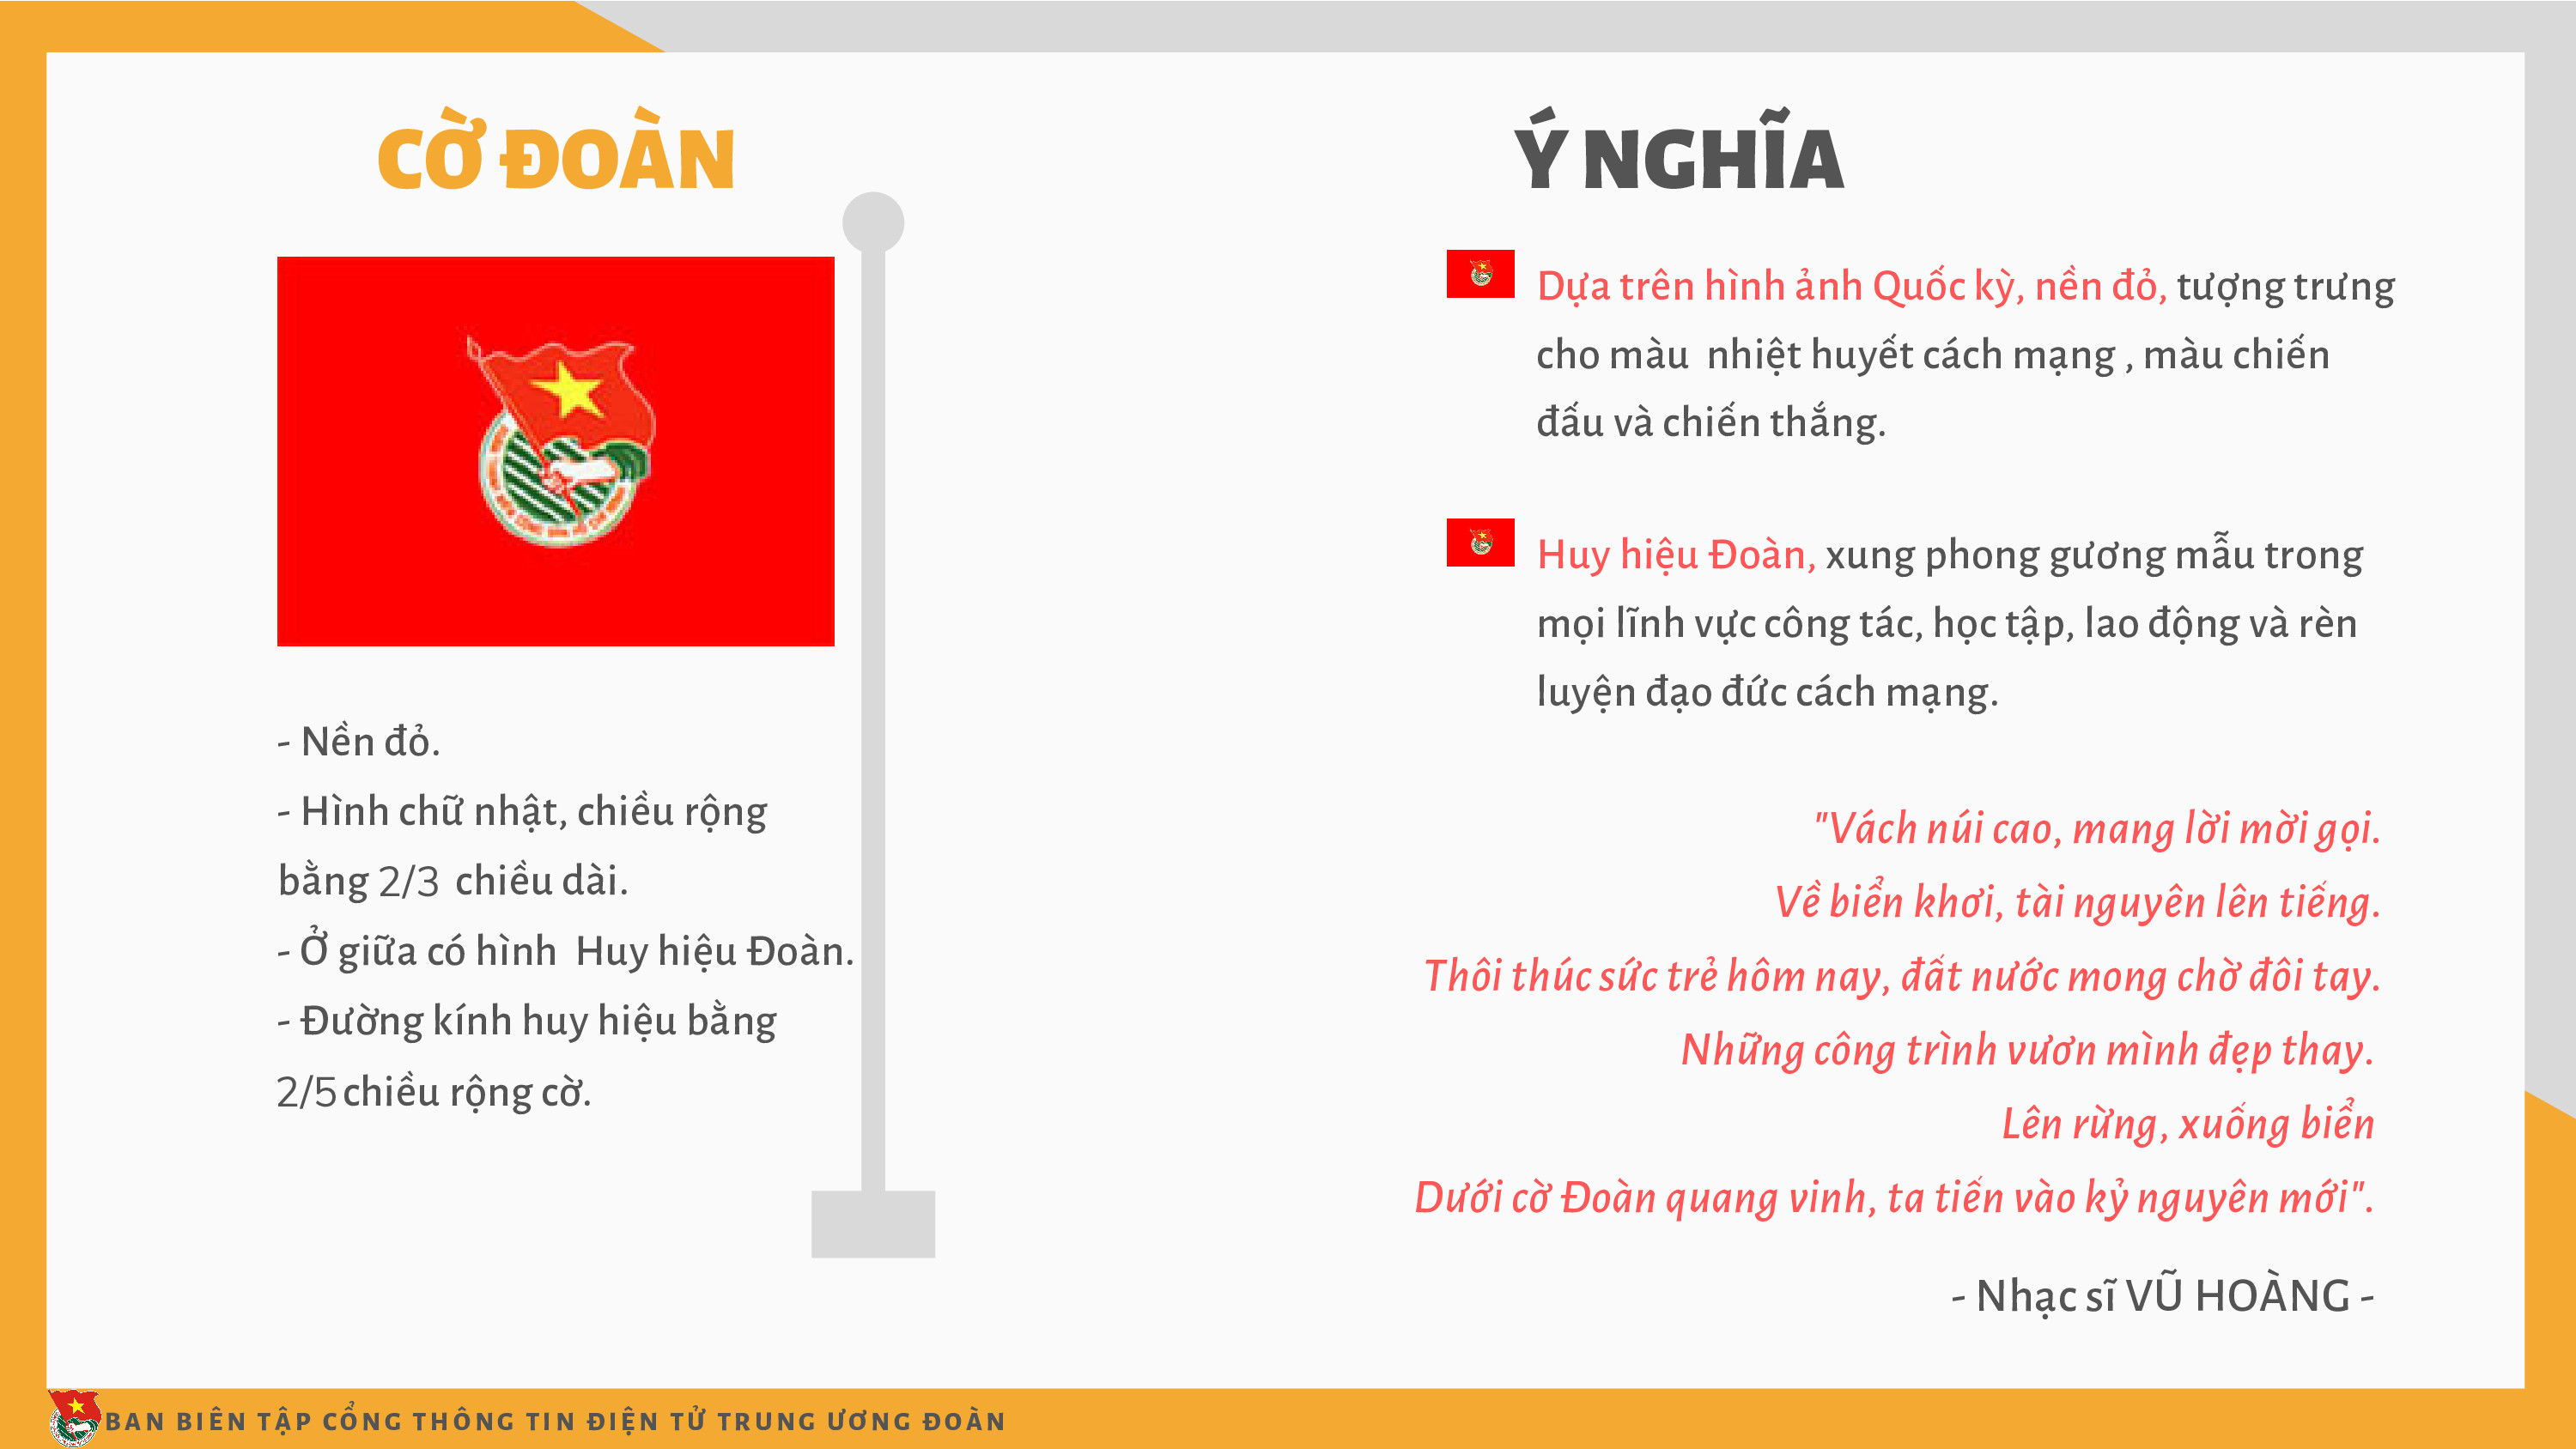 Infographic Đoàn TNCS Hồ Chí Minh là một cách tuyệt vời để hiểu rõ hơn về những giá trị và tôn chỉ của TNXH. Những hình ảnh đẹp mắt và thông tin đầy đủ sẽ giúp bạn tìm hiểu và xây dựng mối quan hệ tốt hơn với cộng đồng TNXH.